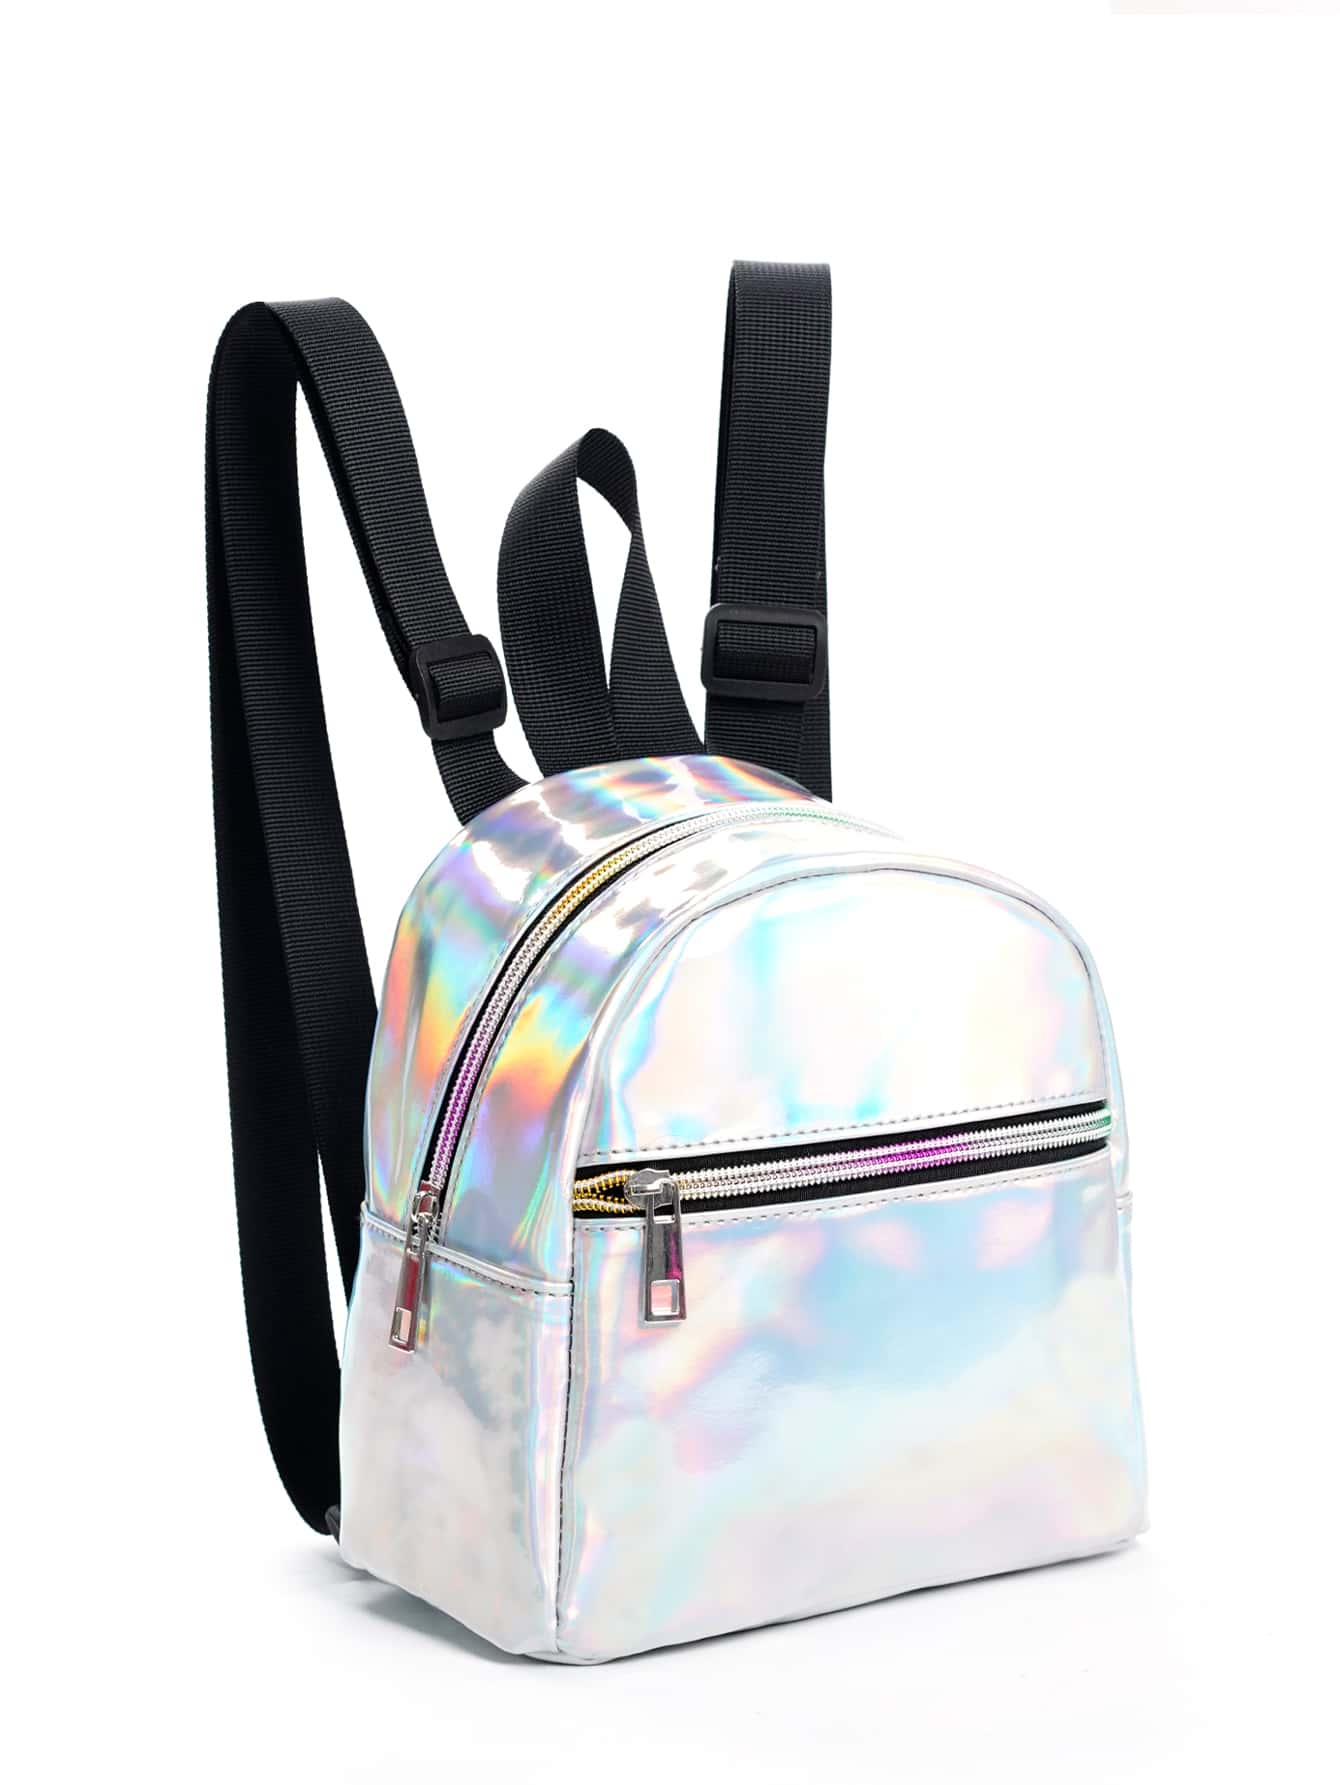 Водонепроницаемый модный мини-голографический рюкзак на молнии спереди, серебро